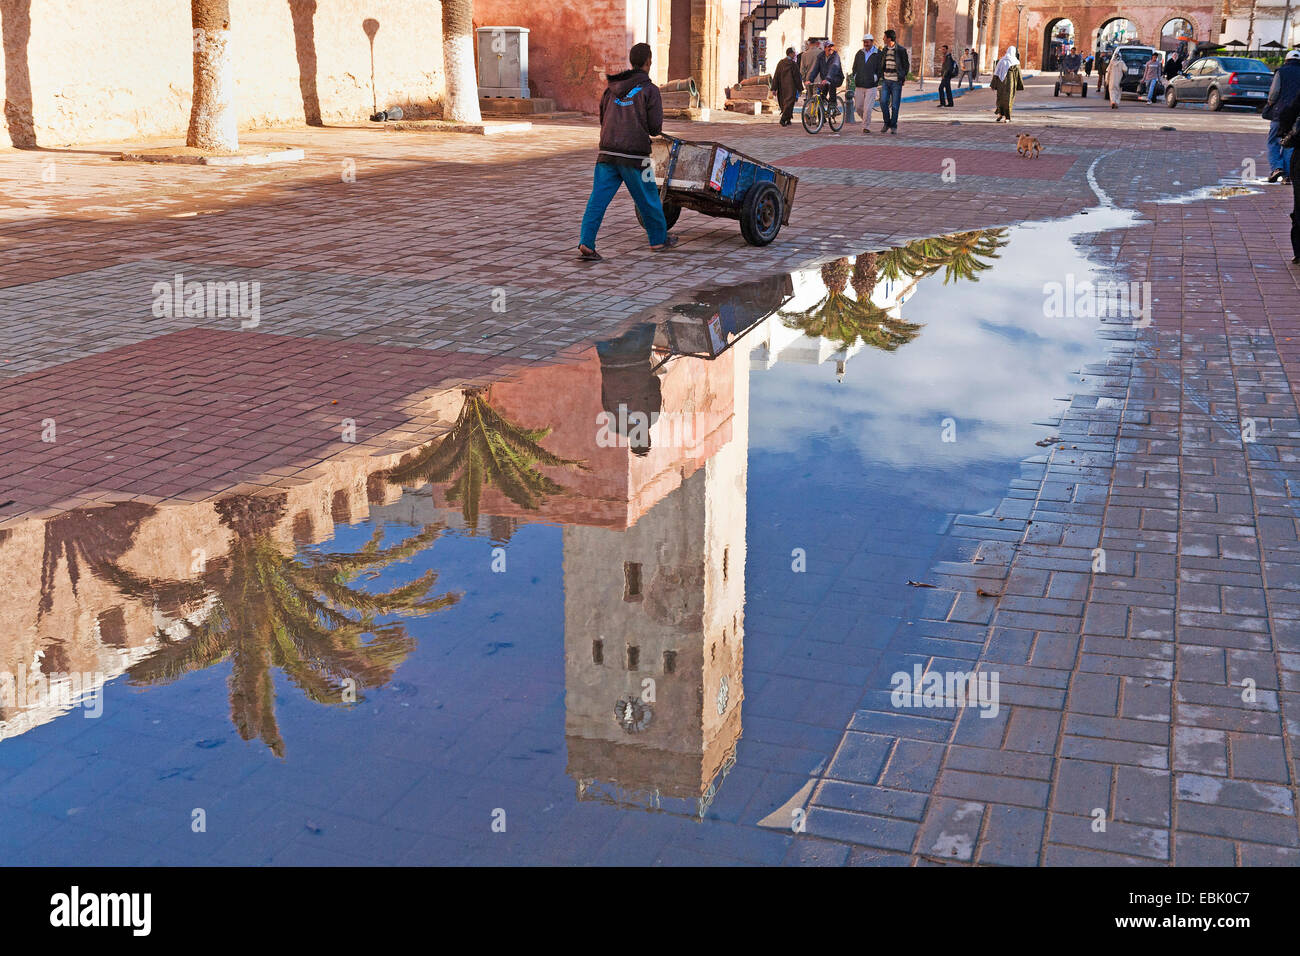 Homme avec un garrot à la ville historique en raison de la paroi en flaque d'eau après une averse, le Maroc, Essaouira Banque D'Images